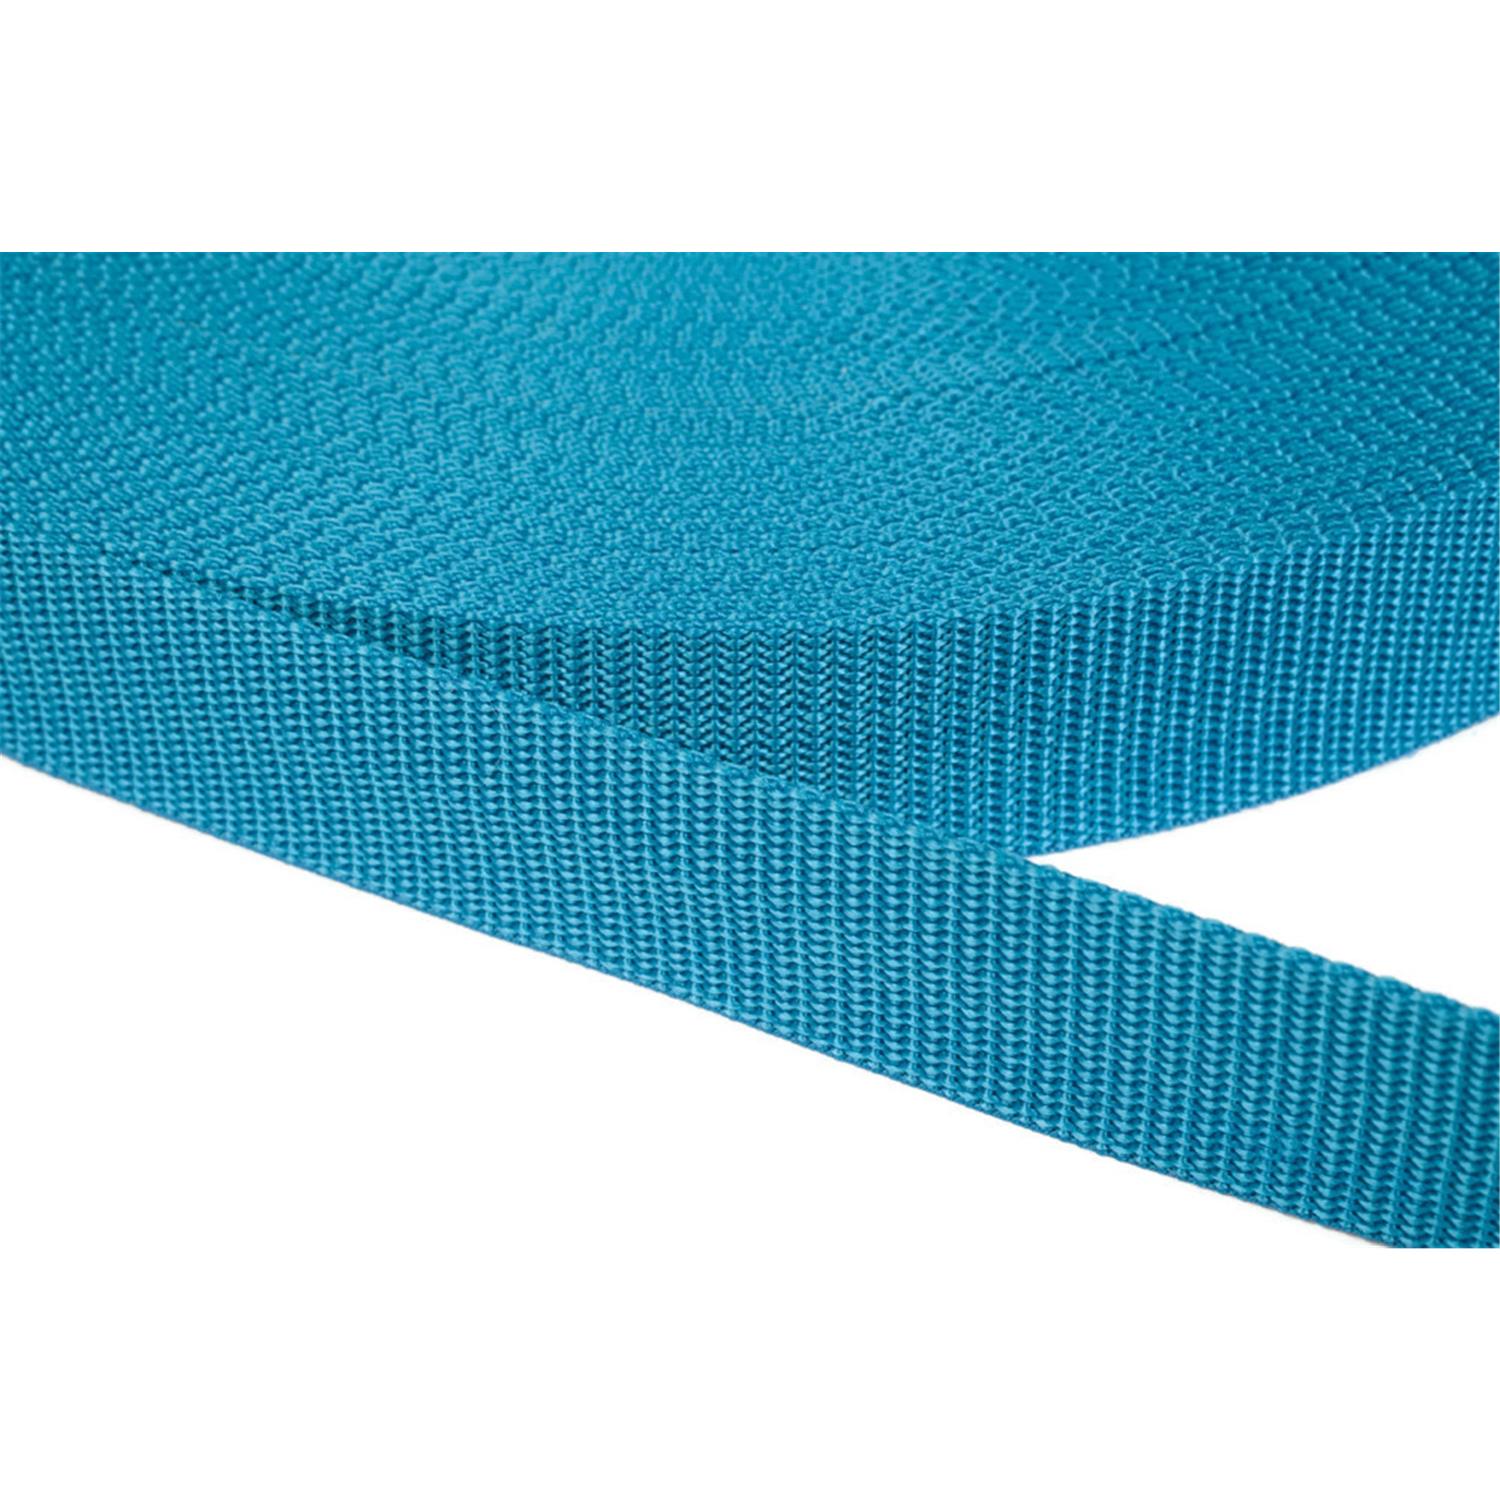 Gurtband 25mm breit aus Polypropylen in 41 Farben 29 - türkis 6 Meter